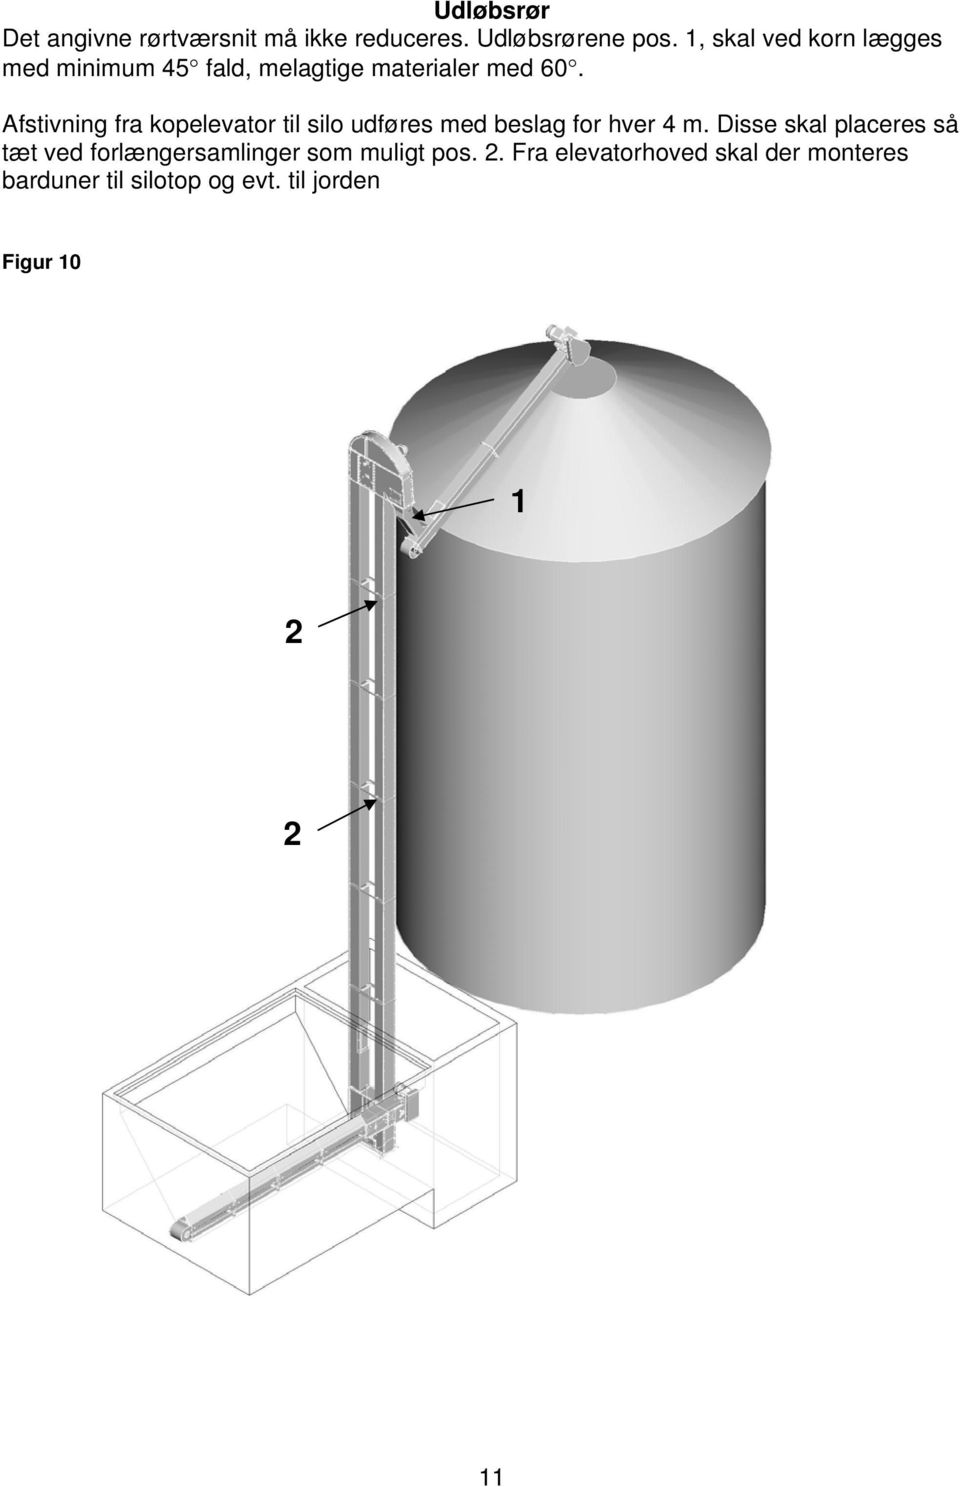 Afstivning fra kopelevator til silo udføres med beslag for hver 4 m.